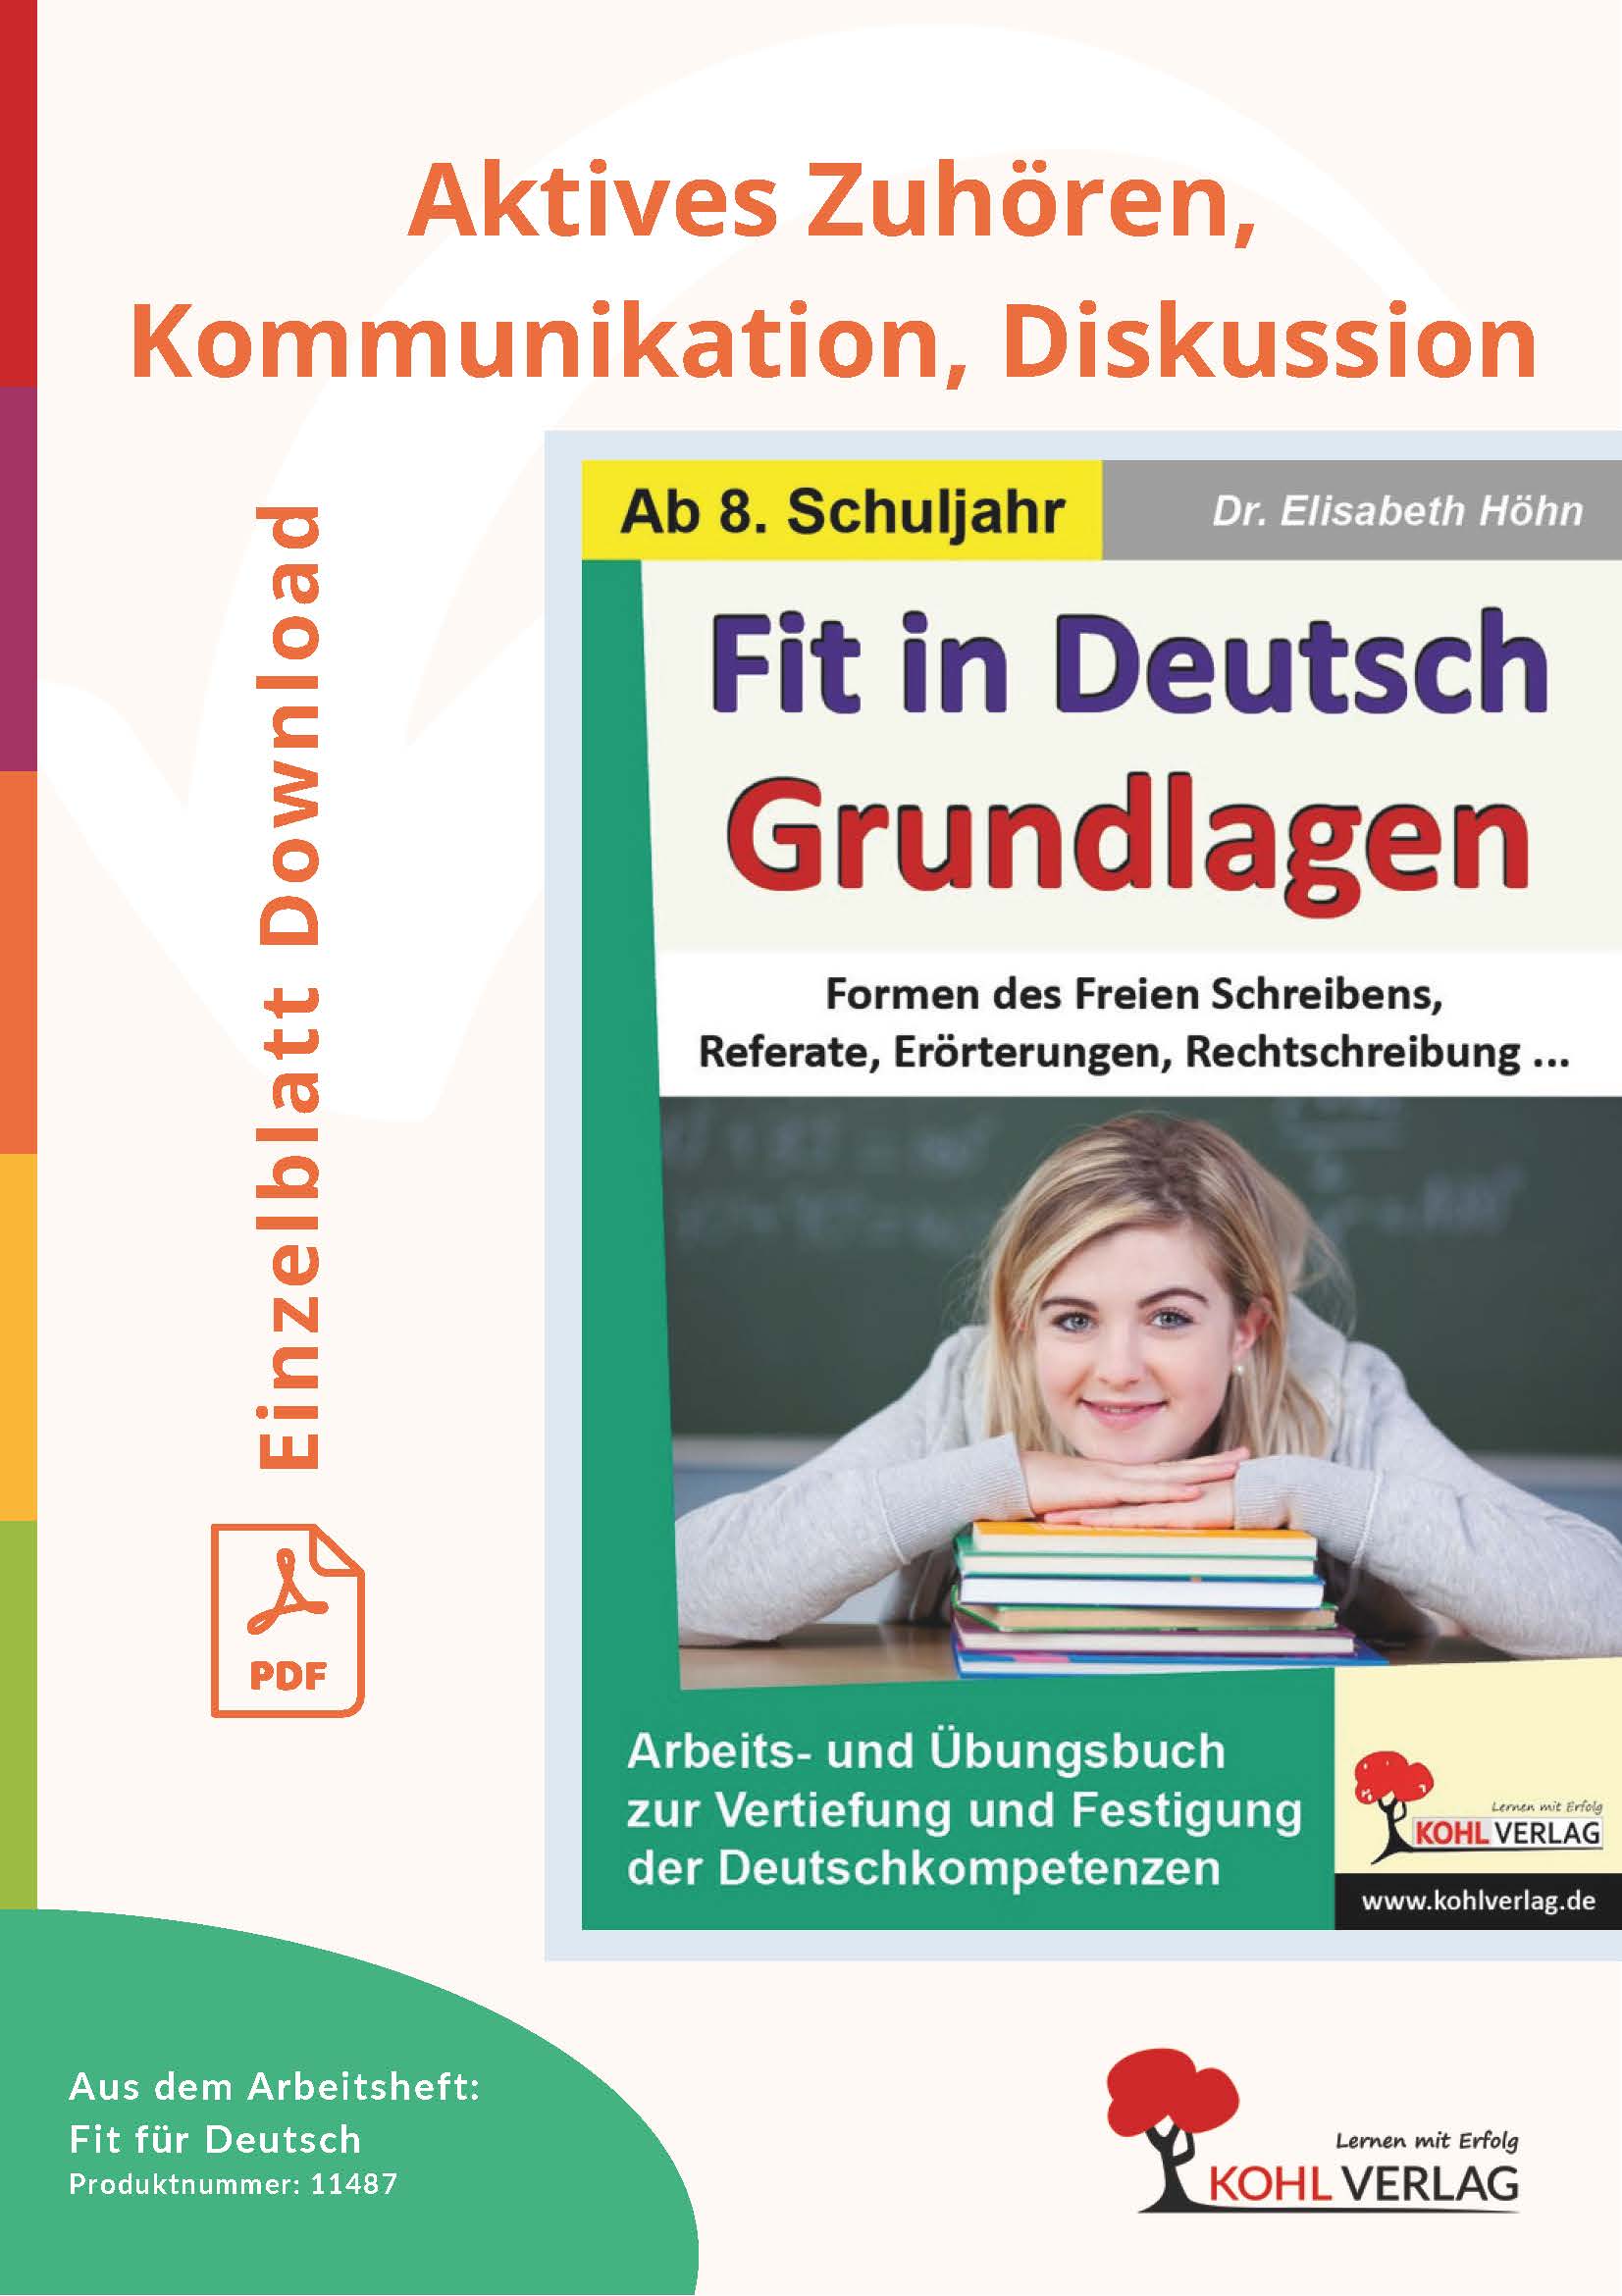 Fit in Deutsch - Grundlagen: Aktives Zuhören, Kommunikation, Diskussion